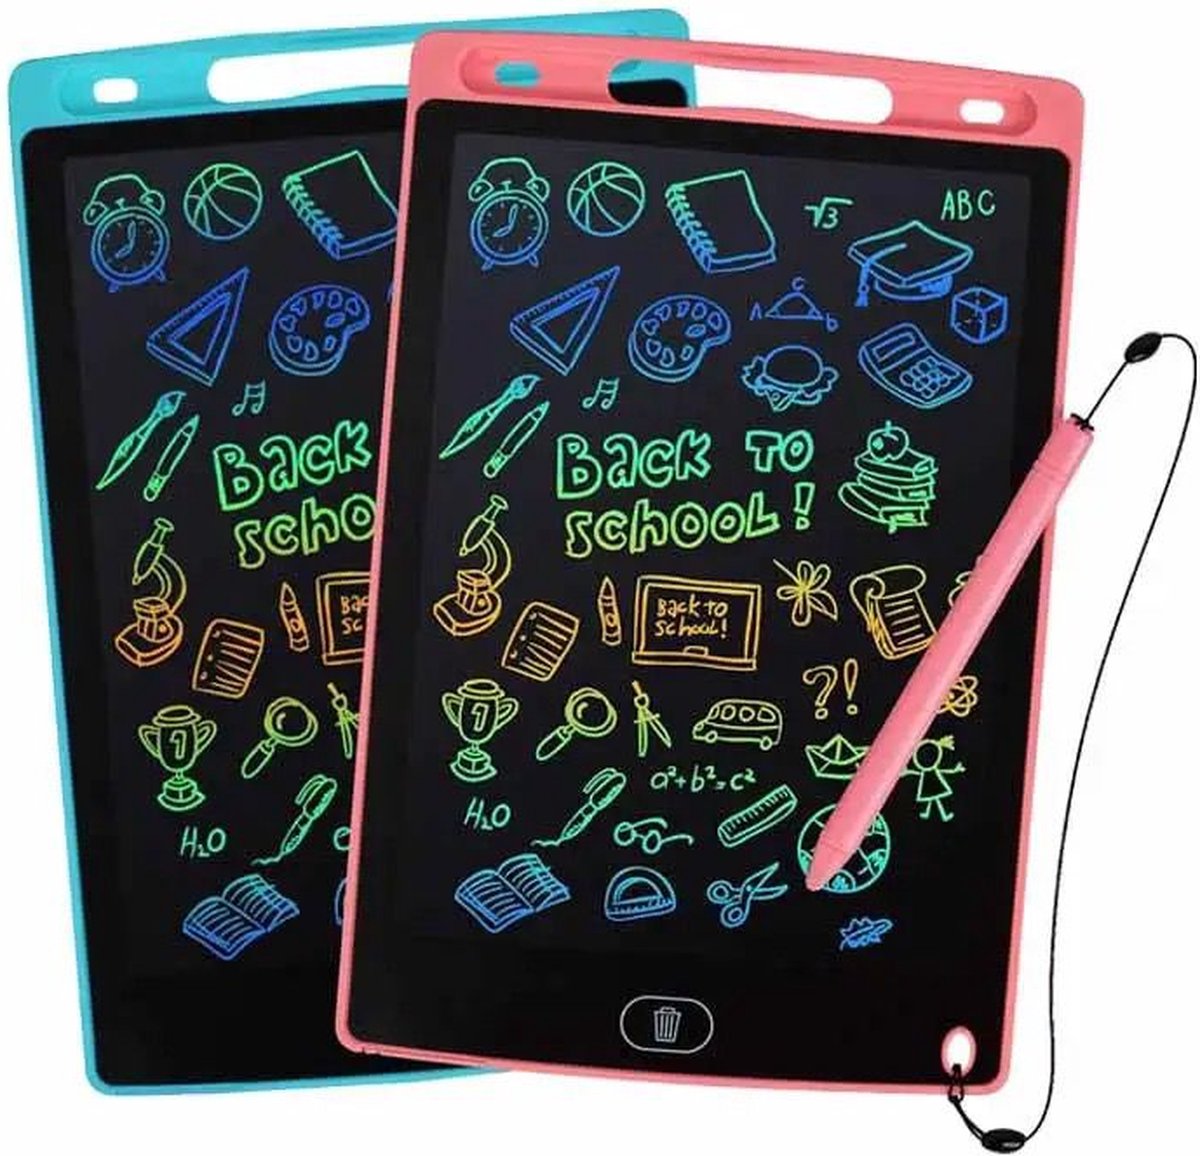 LCD Tekentablet Kinderen 10 inch - Roze - Kleurenscherm - Sinterklaas - Sint - Kindertablet - Sinterklaas Cadeautjes - Kerst - Teken Tablet - Tekentablets - Ewriter - Teken Ipad - Schrijven - Verjaardag - Cadeau - Kerstcadeau